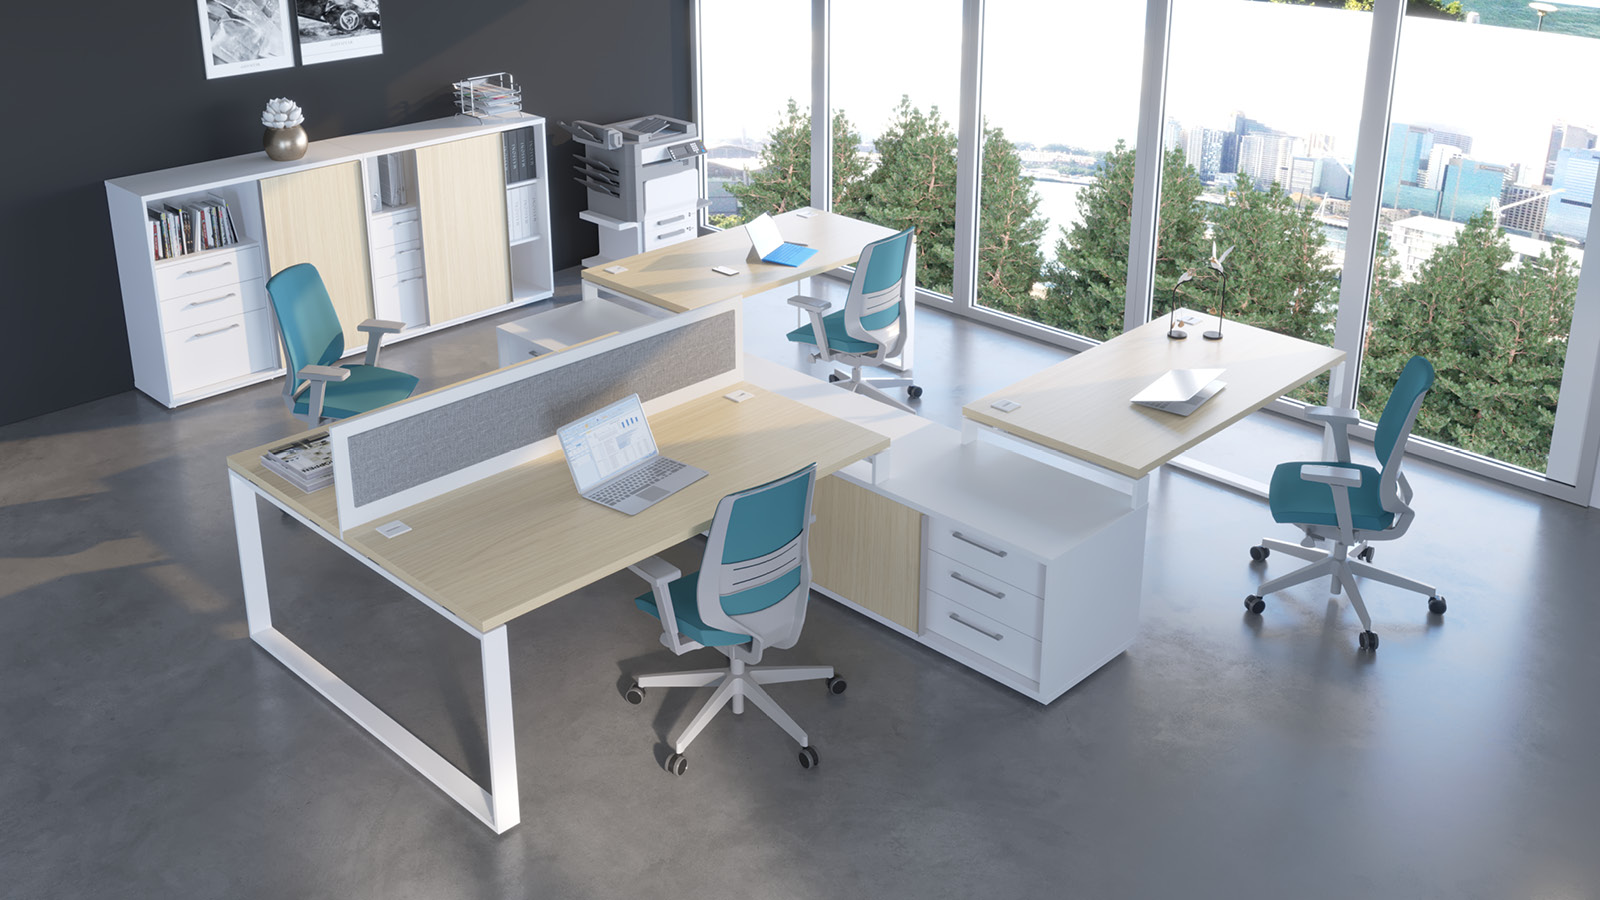 Przestronny open space wyposażony w podwójne biurko na komodzie oraz 2 stanowiska jednoosobowe. Całość w kolorze: klon/biały.